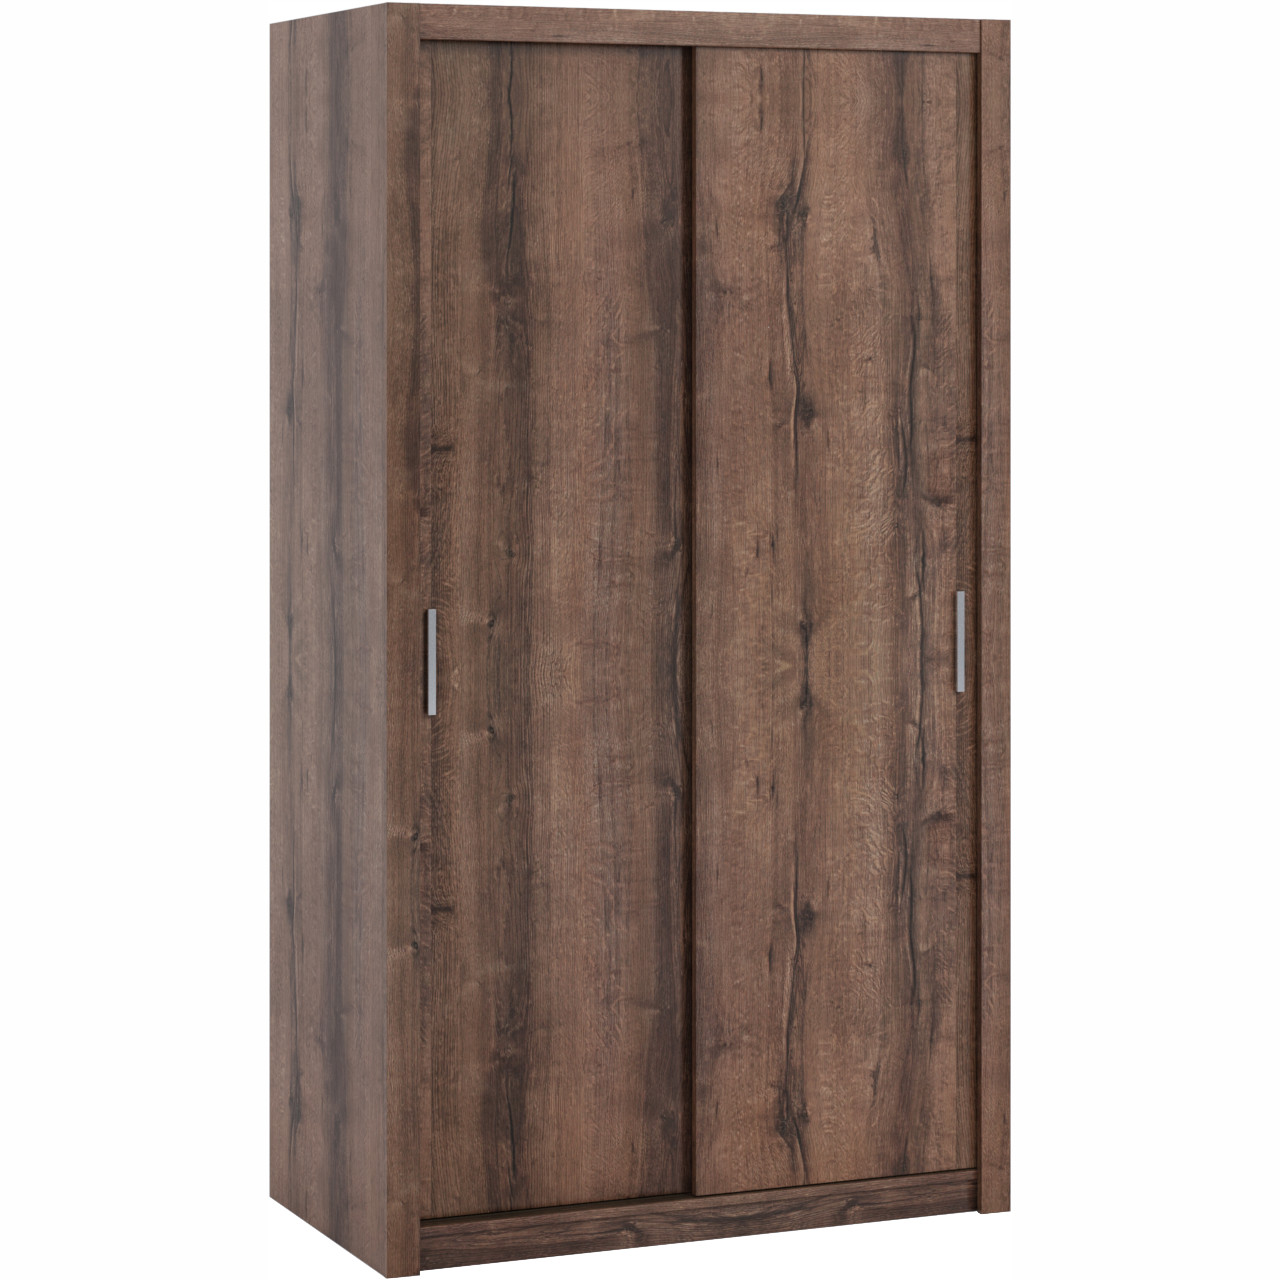 Wardrobe with Sliding Doors 120 BONO BO07 monastery oak